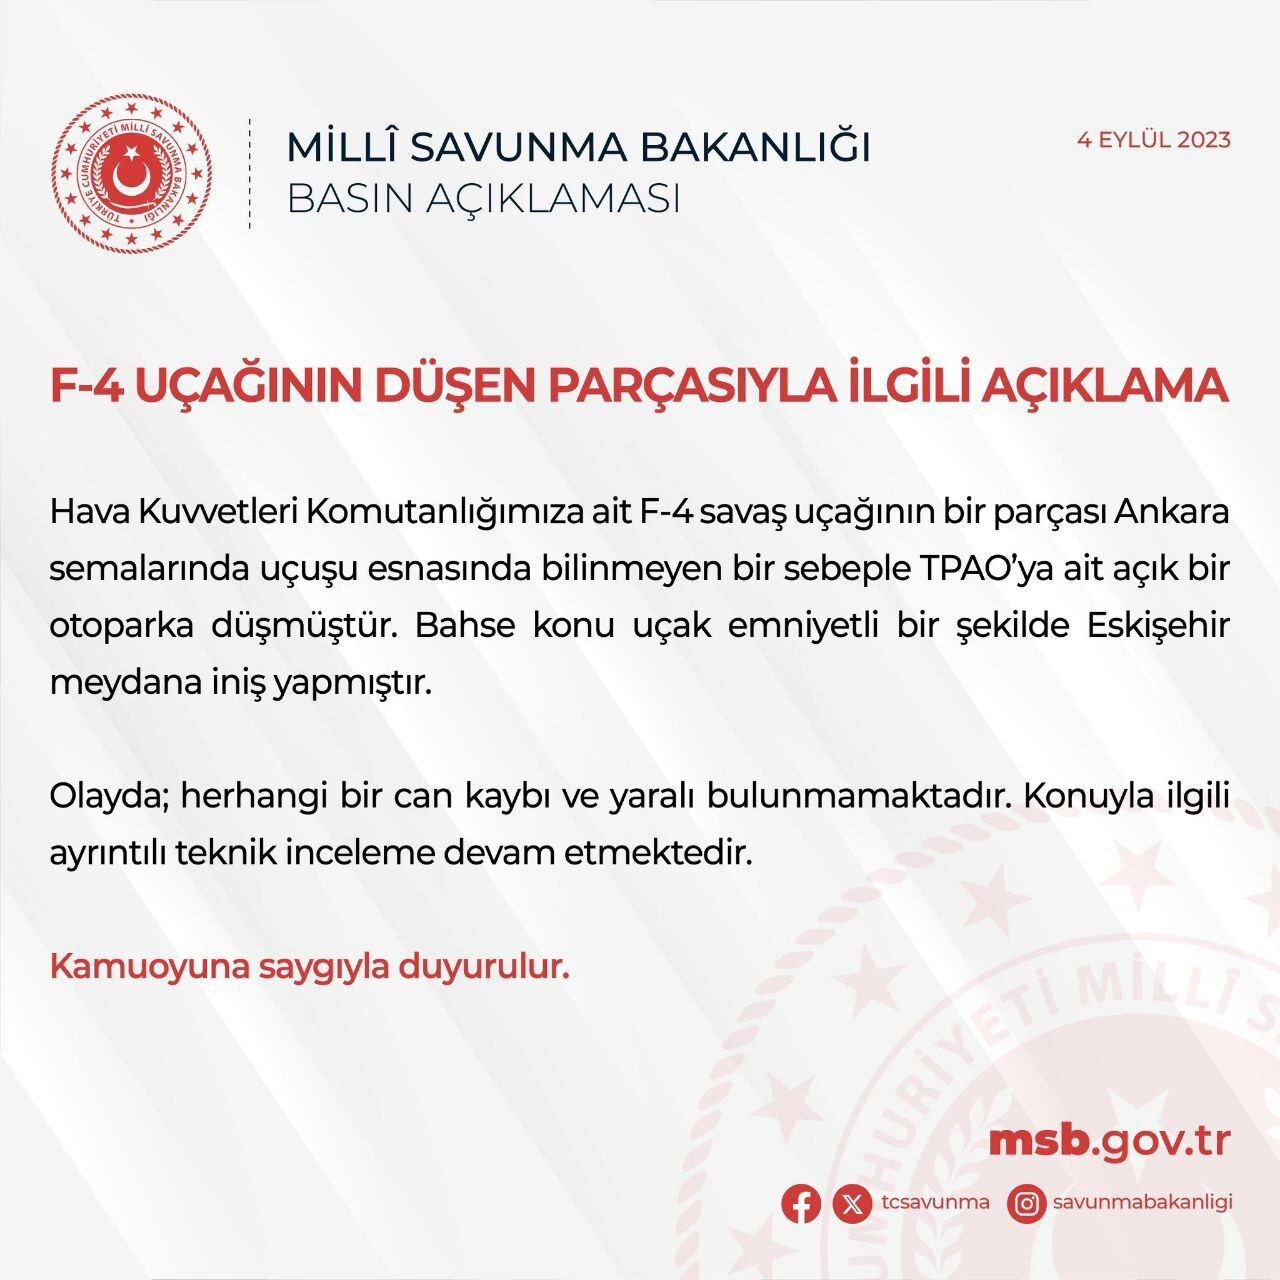 بیانیه وزارت دفاع ترکیه در مورد سقوط مخزن سوخت جنگنده F-4